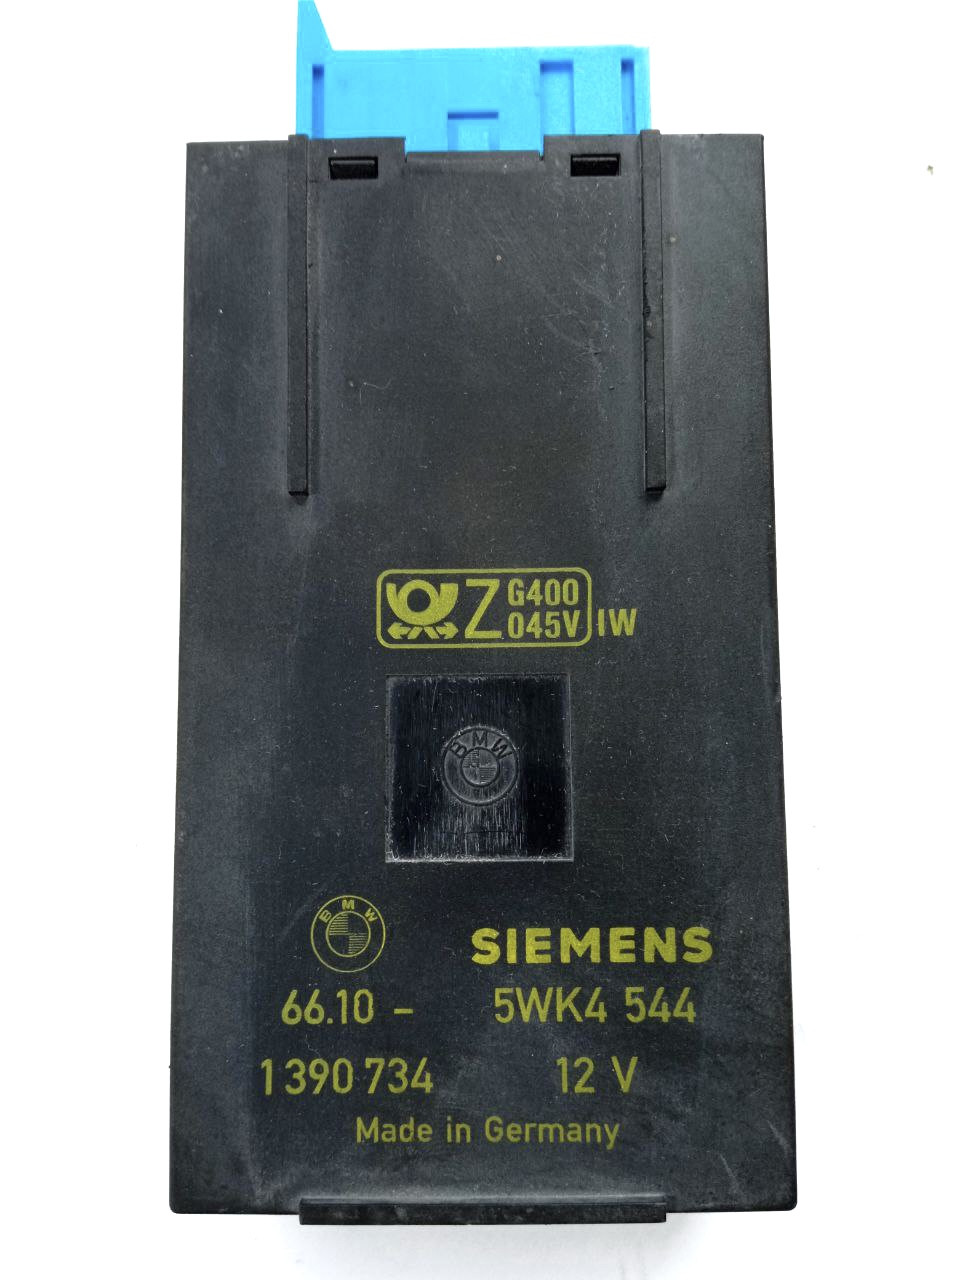 Електронний блок керування сигналізації з інфракрасним модулем bmw 66.10-1390734 siemens 5WK4544 12V